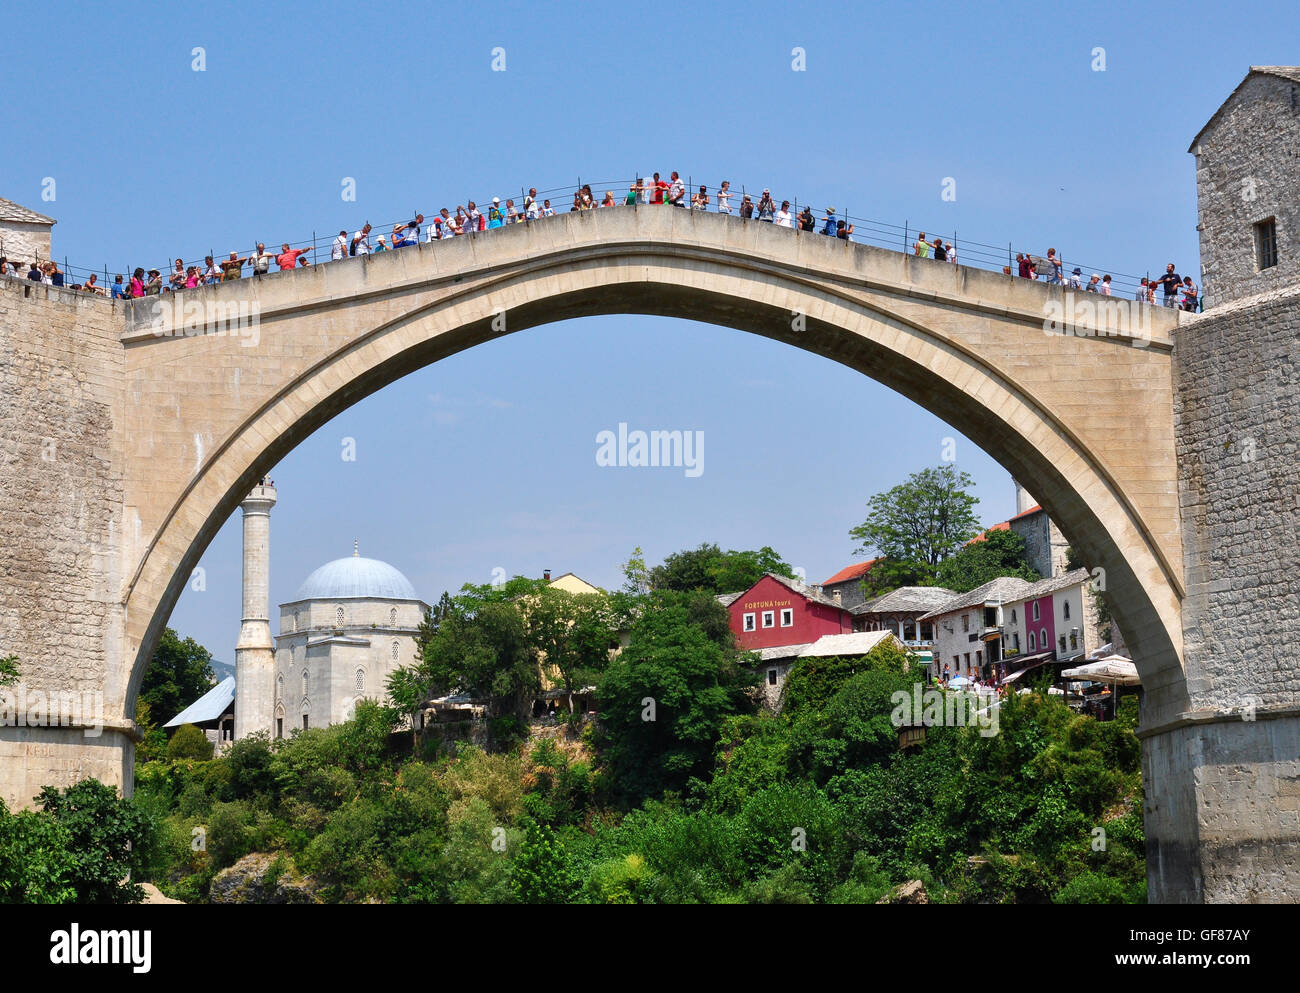 MOSTAR, Bosnien - 10. August 2012: Undefined Menschen auf der Brücke in die Altstadt von Mostar, Bosnien am 10. August 2012. Mostar ist die Stockfoto